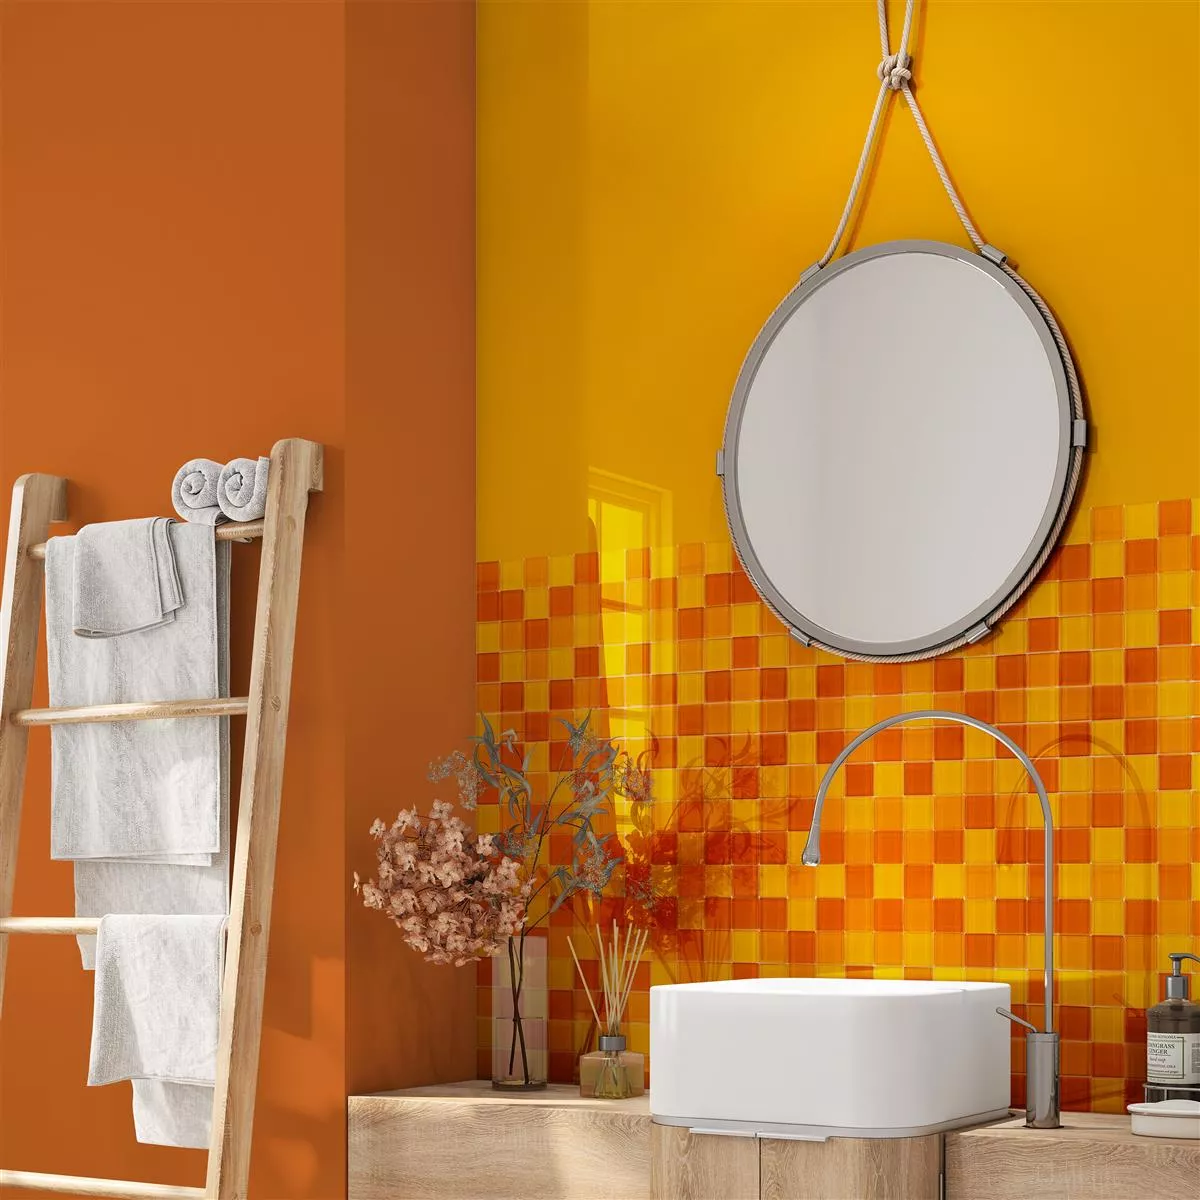 Sample Glass Mosaic Tiles Glasgow Orange Mix